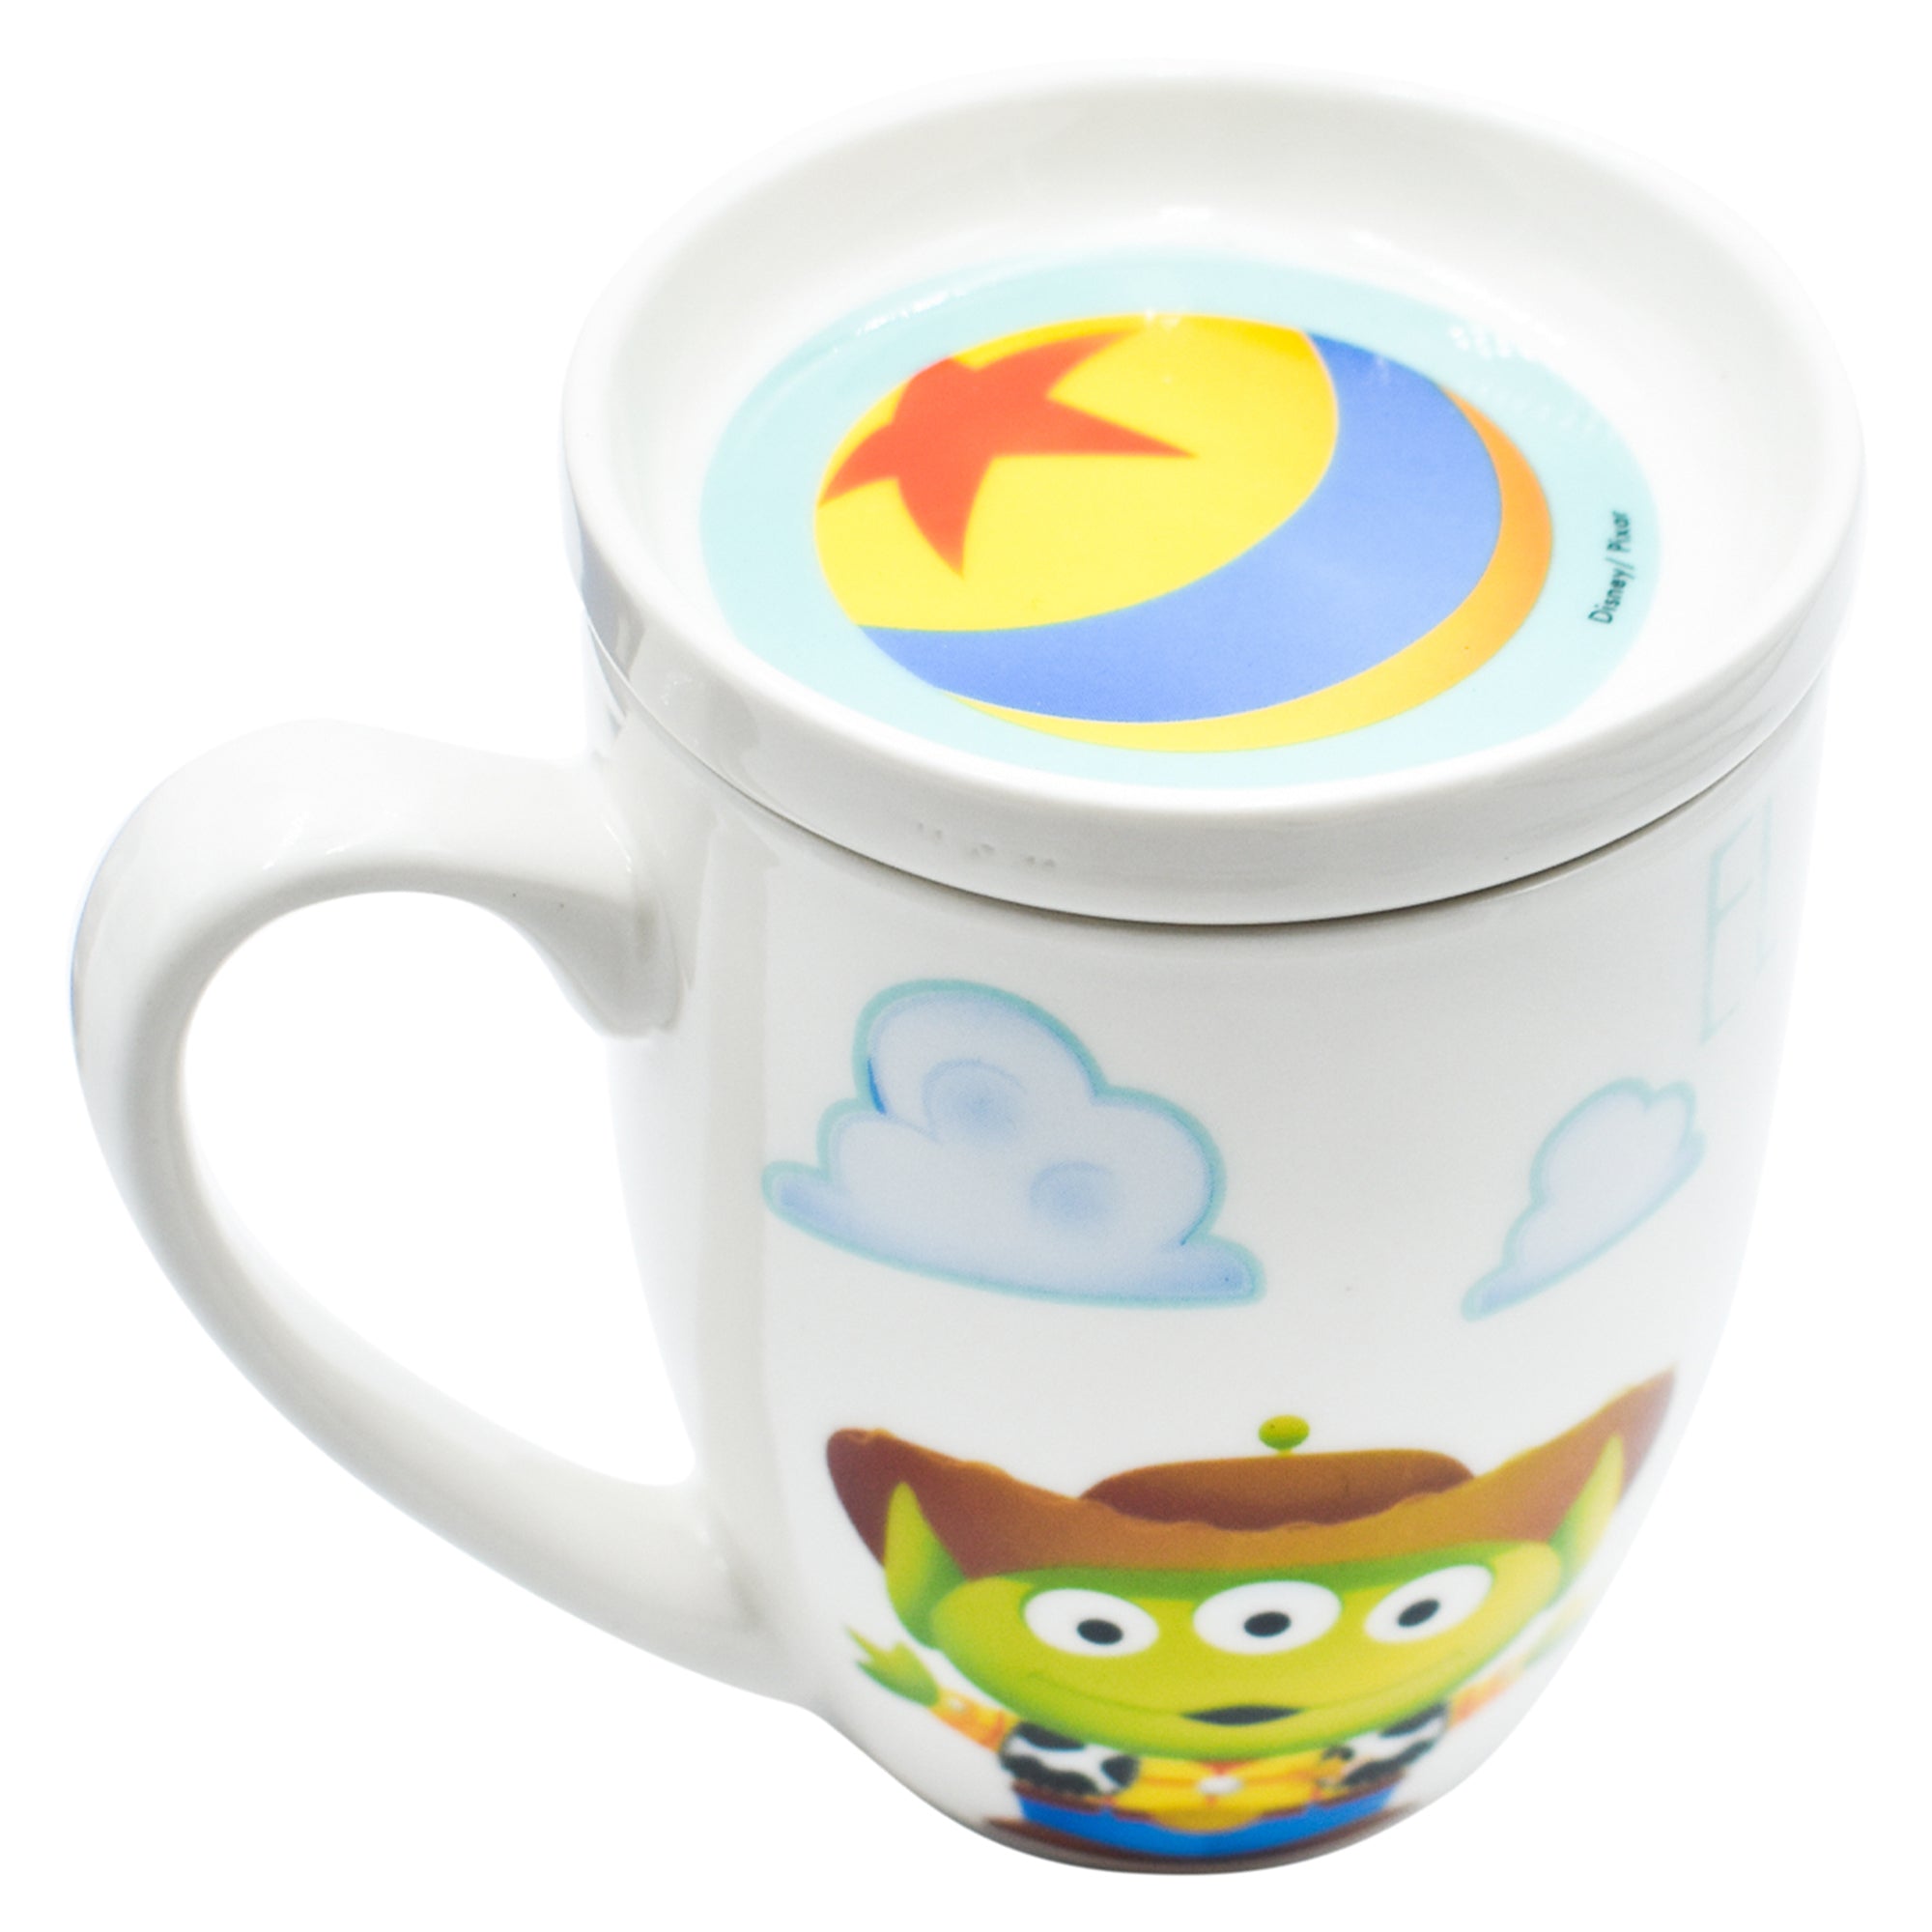 Taza c/Tapa Fun Kids Disney Pixar Porcelana 385ml